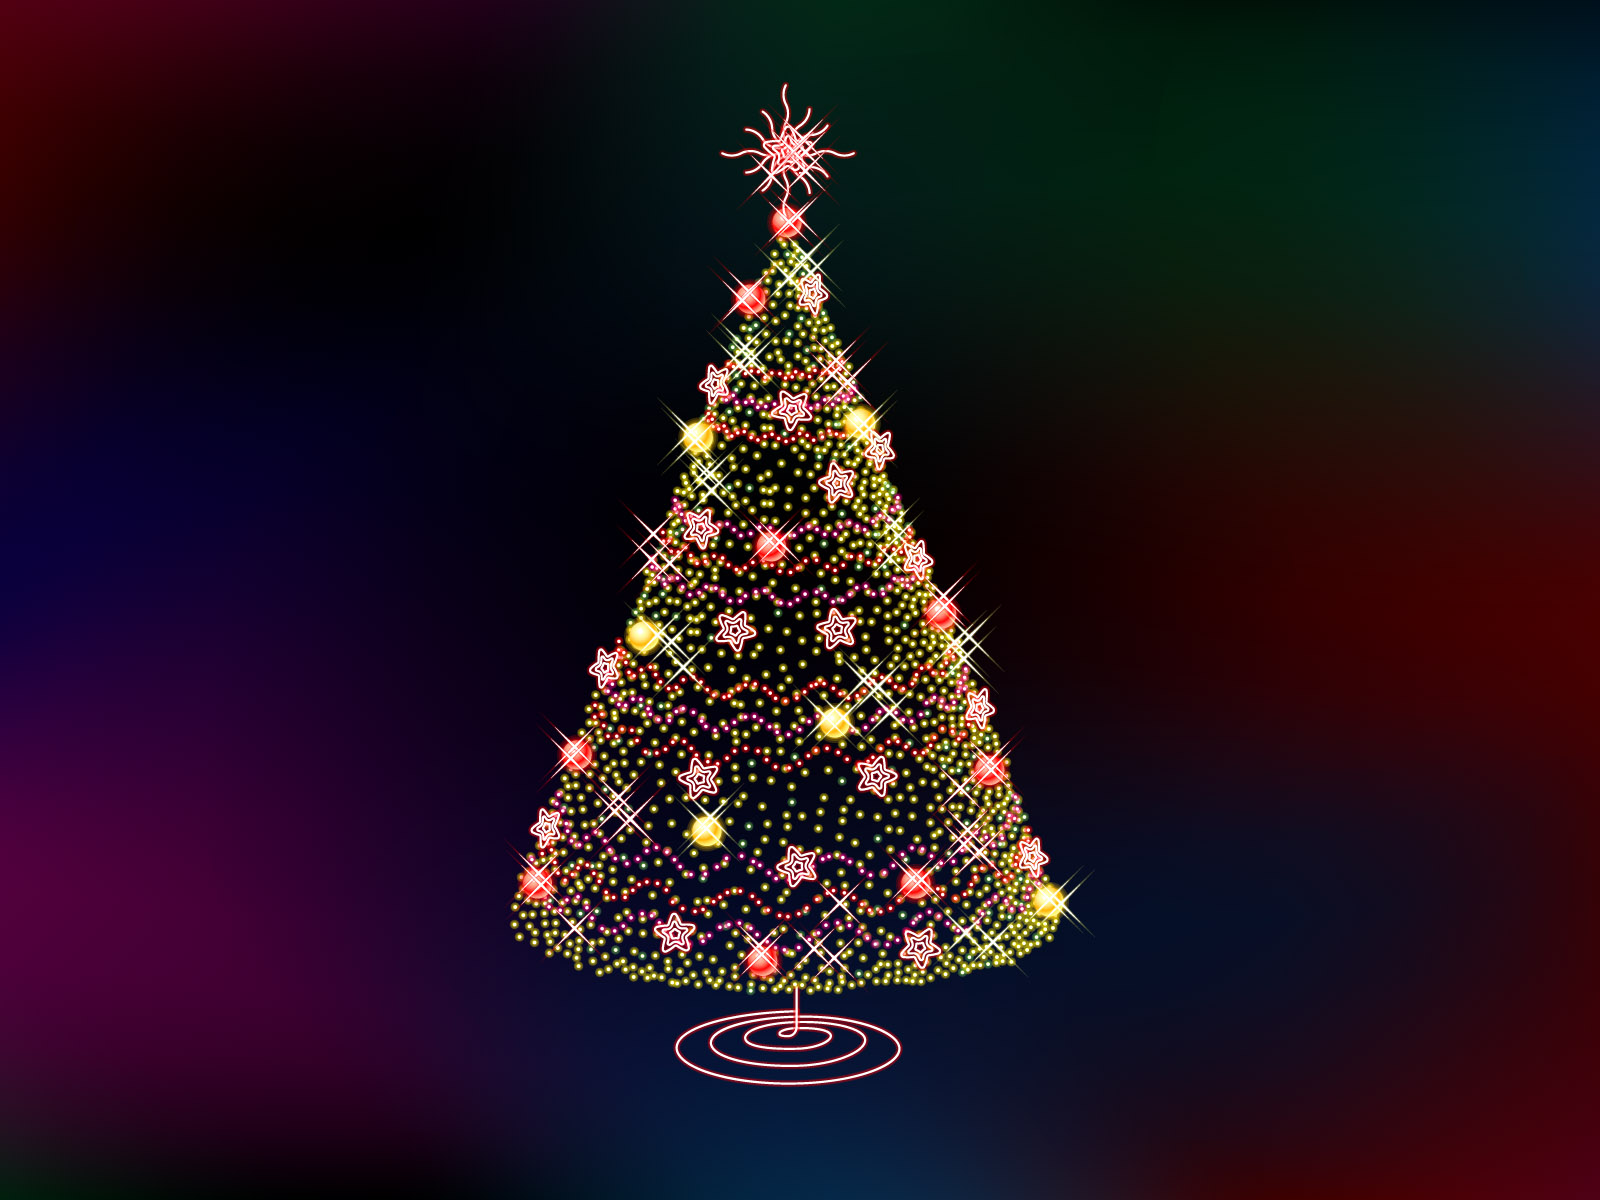 árbol de navidad fondos de escritorio,árbol de navidad,árbol,decoración navideña,decoración navideña,navidad